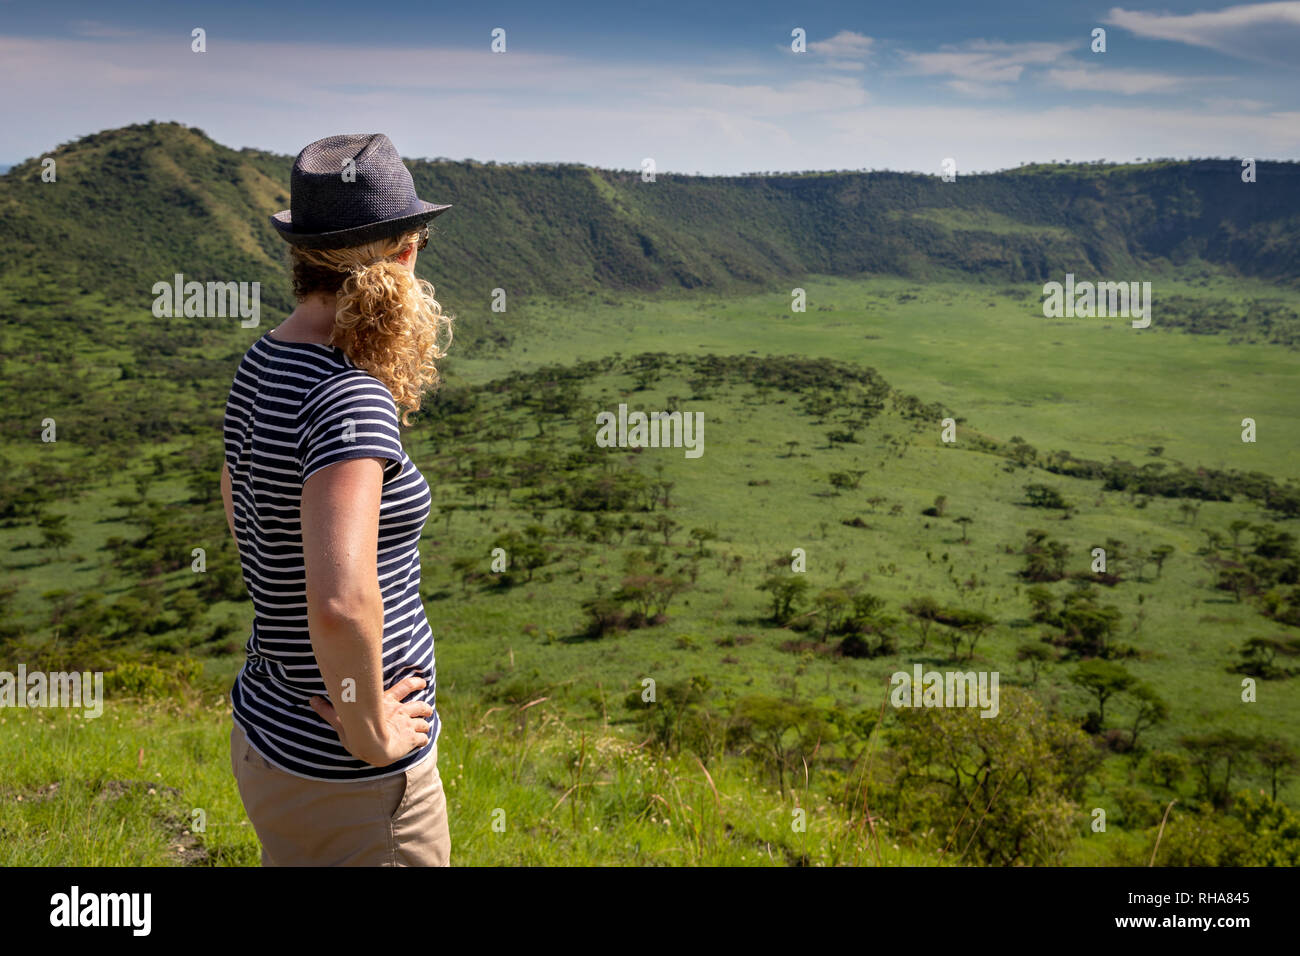 Female hiker admiring view de cratère volcanique dans le Parc national Queen Elizabeth, en Ouganda Banque D'Images